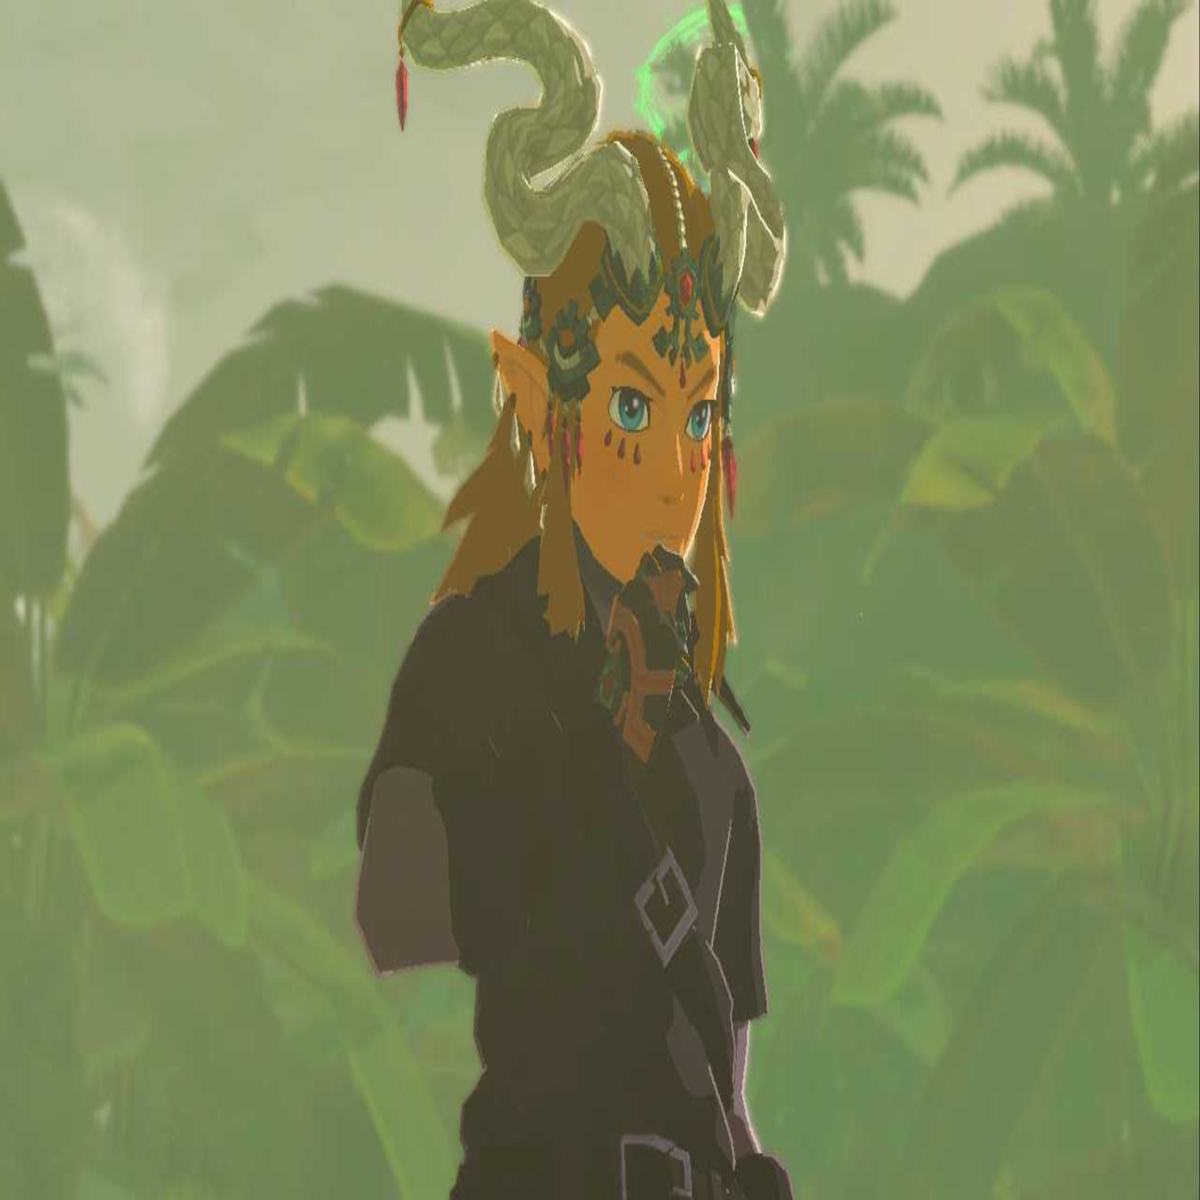 TotK Princess Zelda